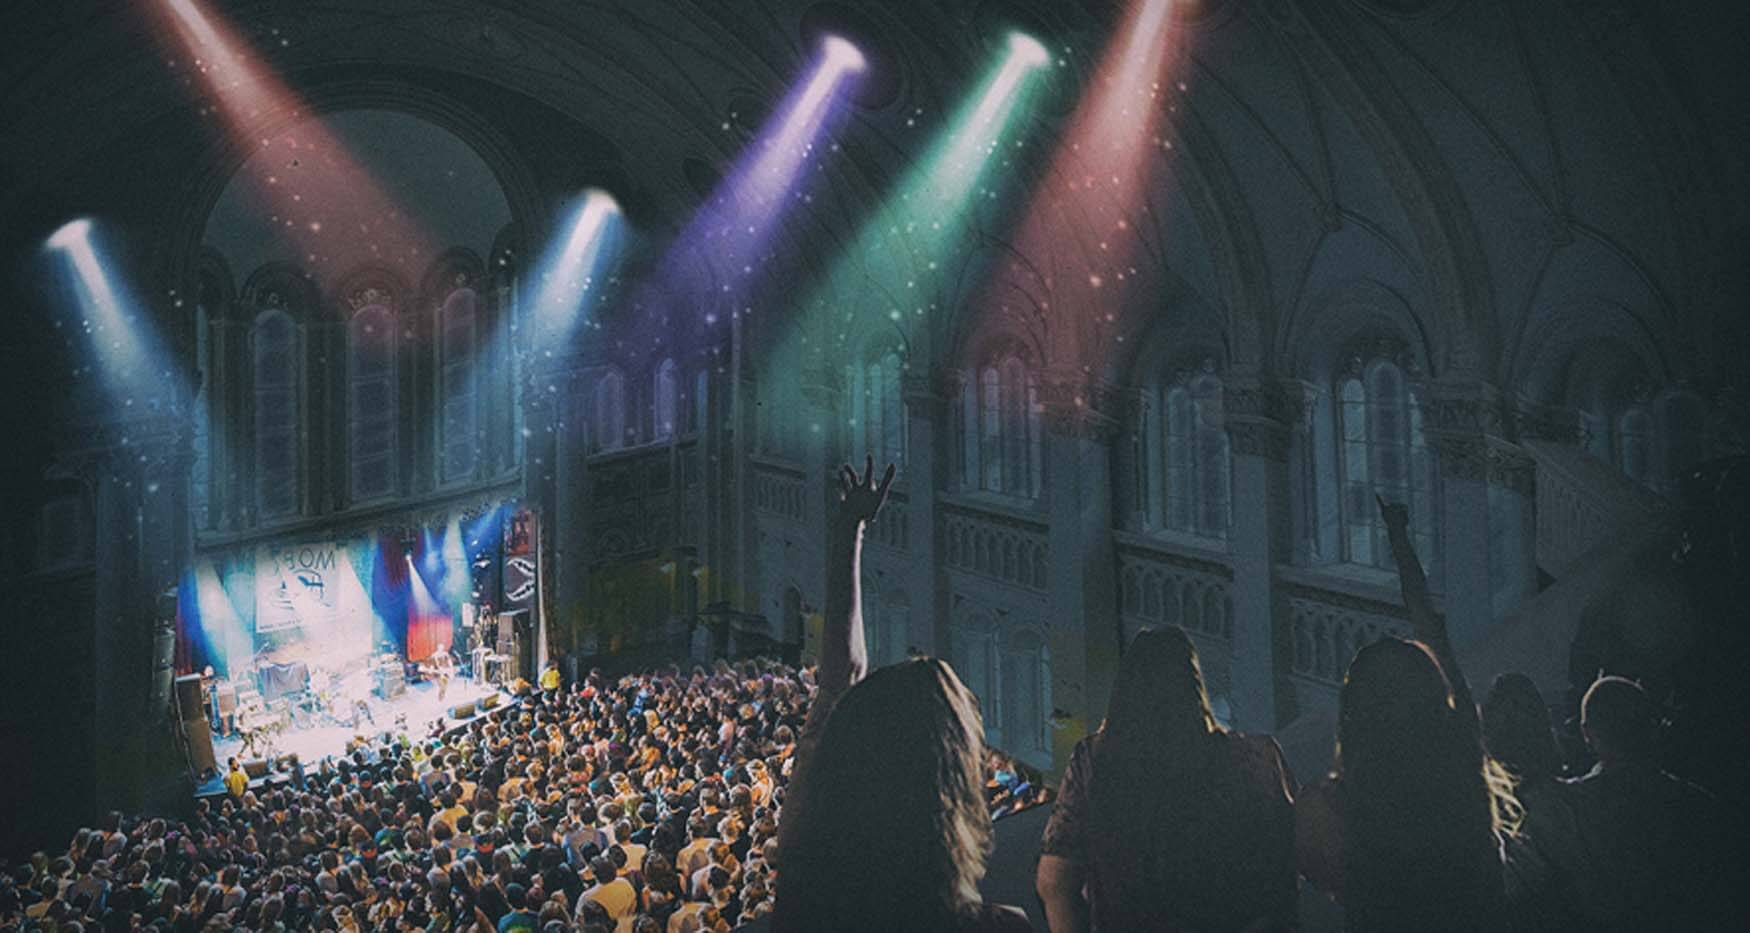 چراغ های رنگارنگ و جمعیت کنسرت در داخل کلیسا